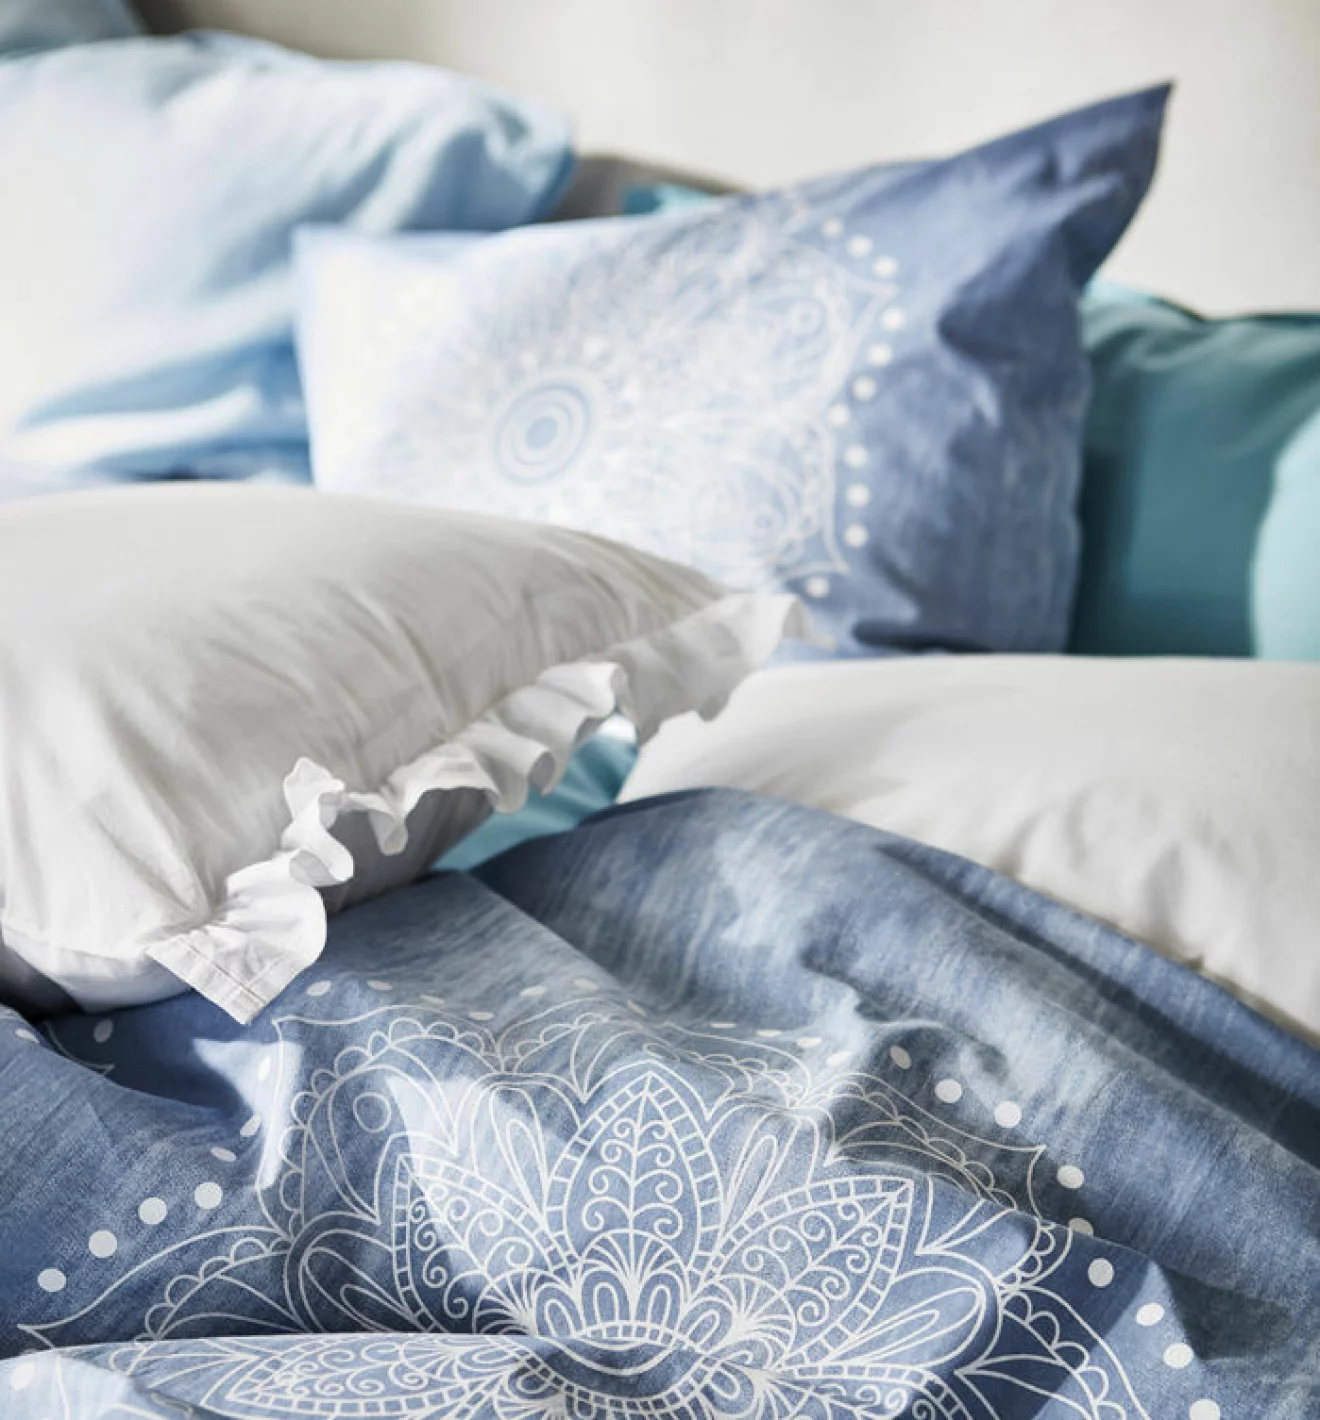 Detaljbild på sängkläder i blåa toner